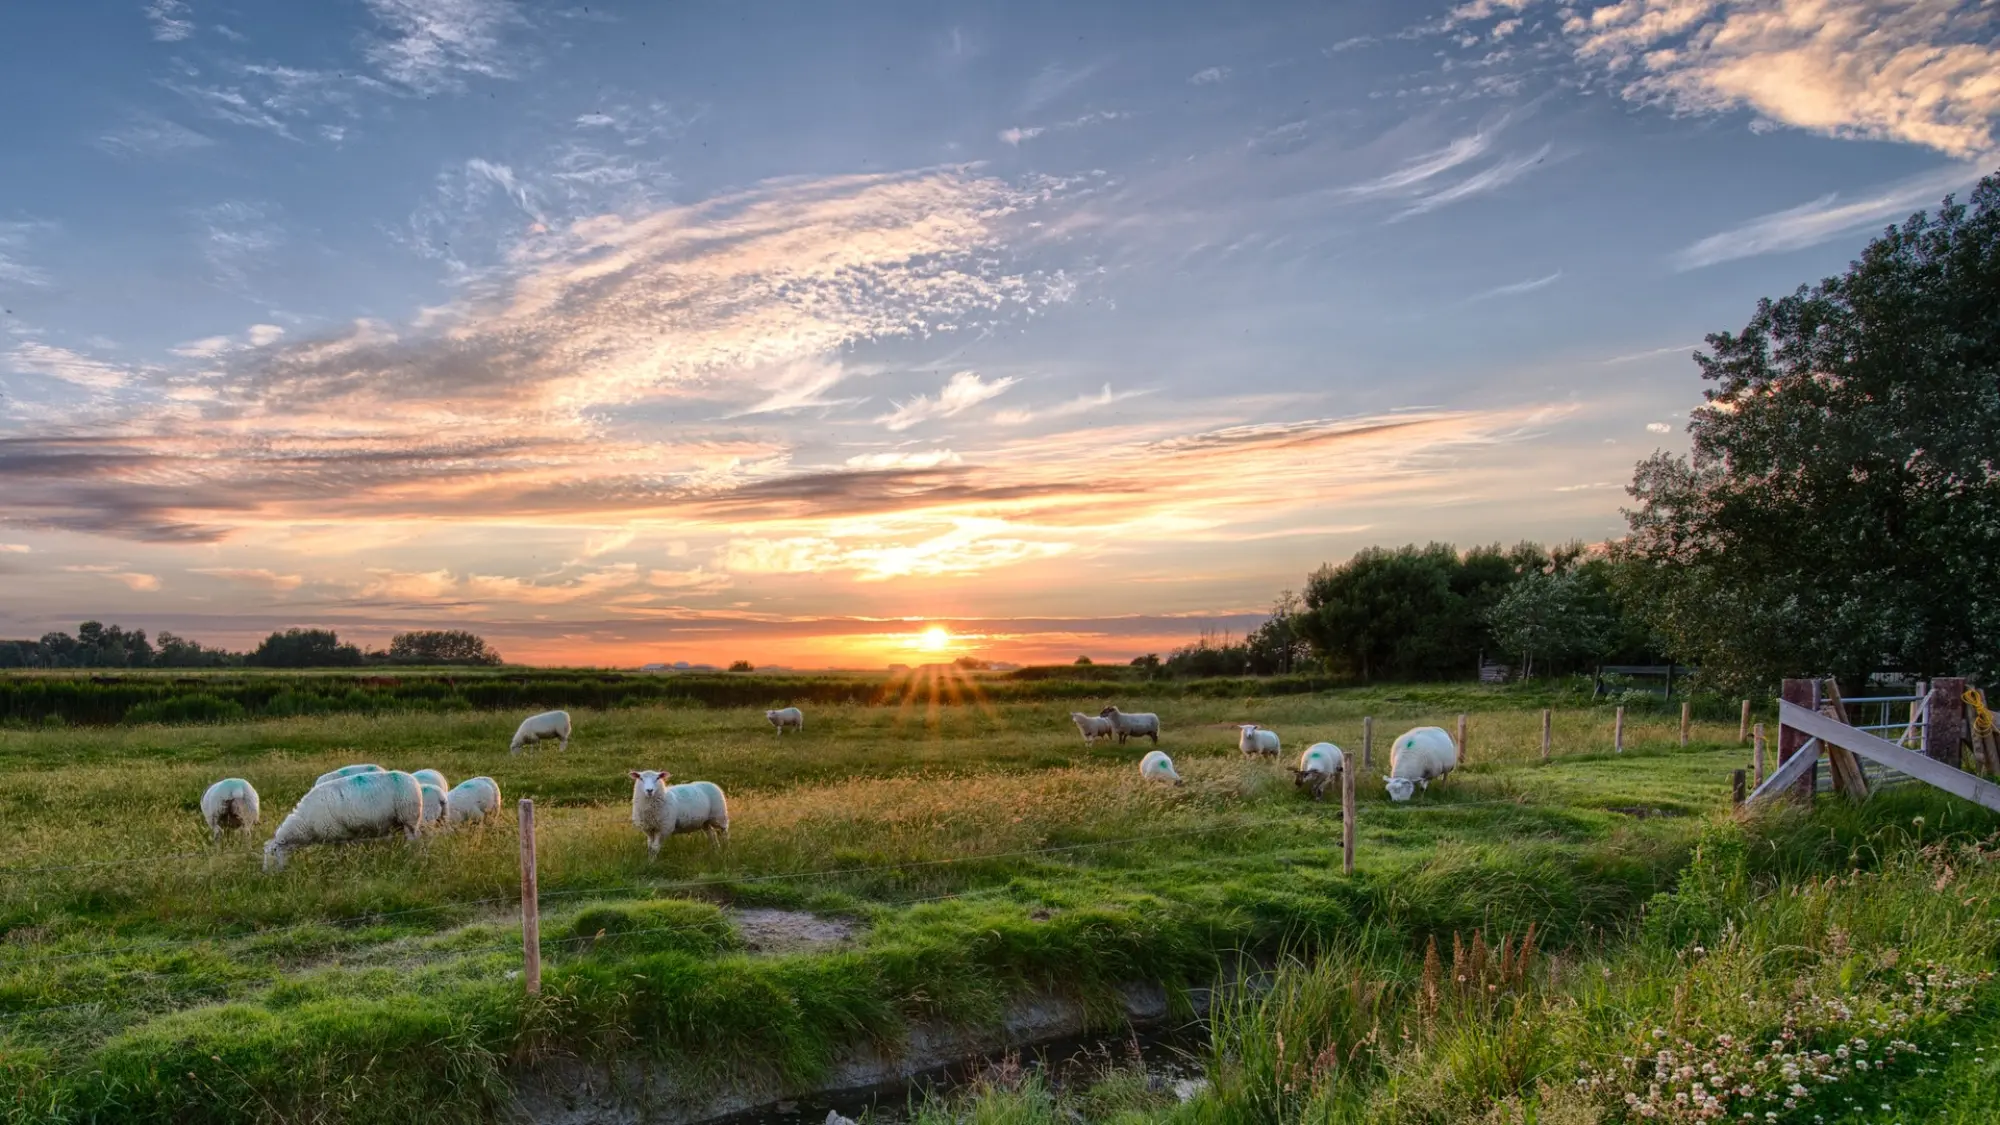 field of sheep in a field